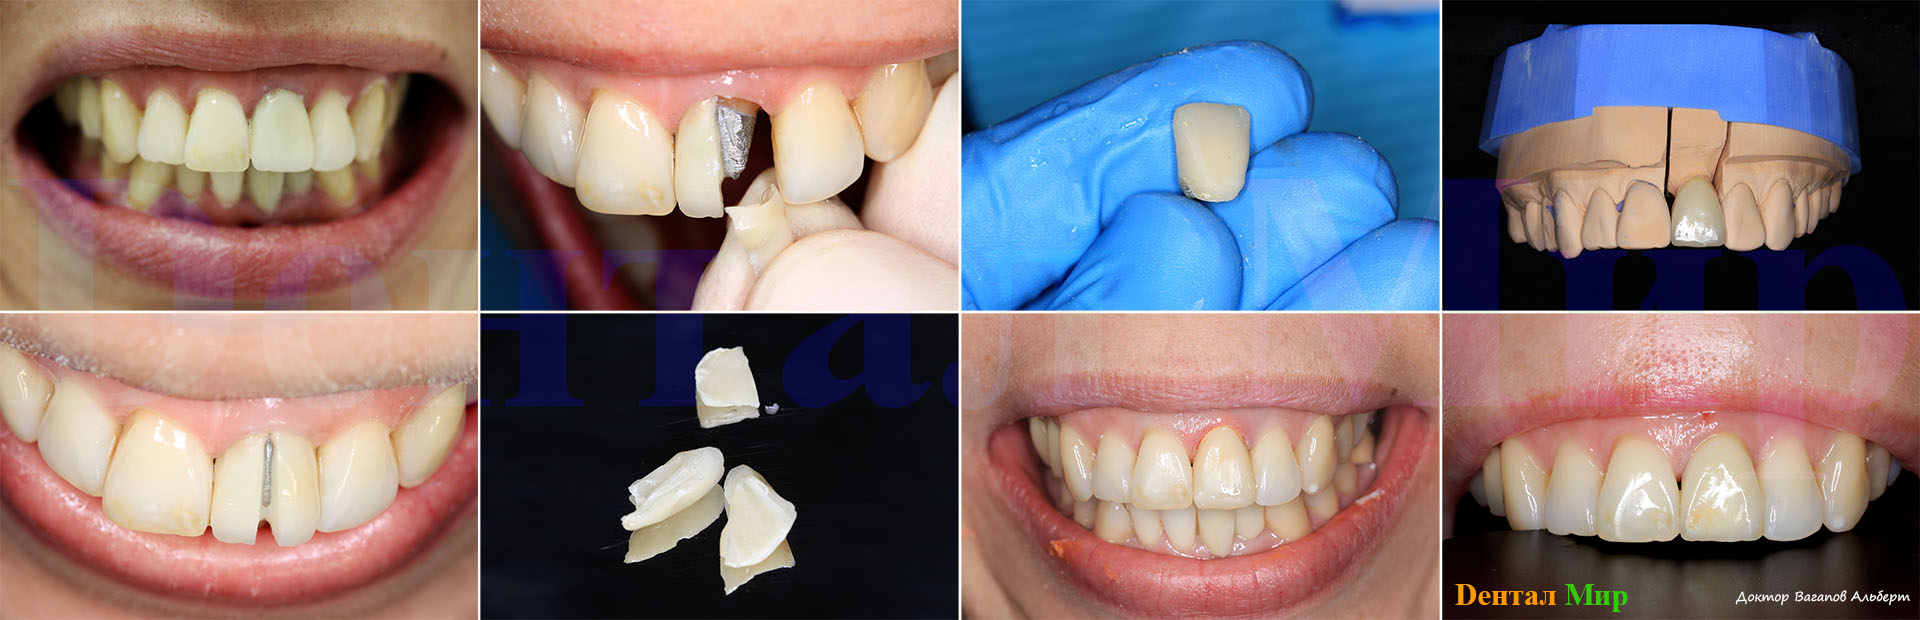 Как делают и ставят коронку на зуб: больно ли, этапы установки, процесс подготовки зуба